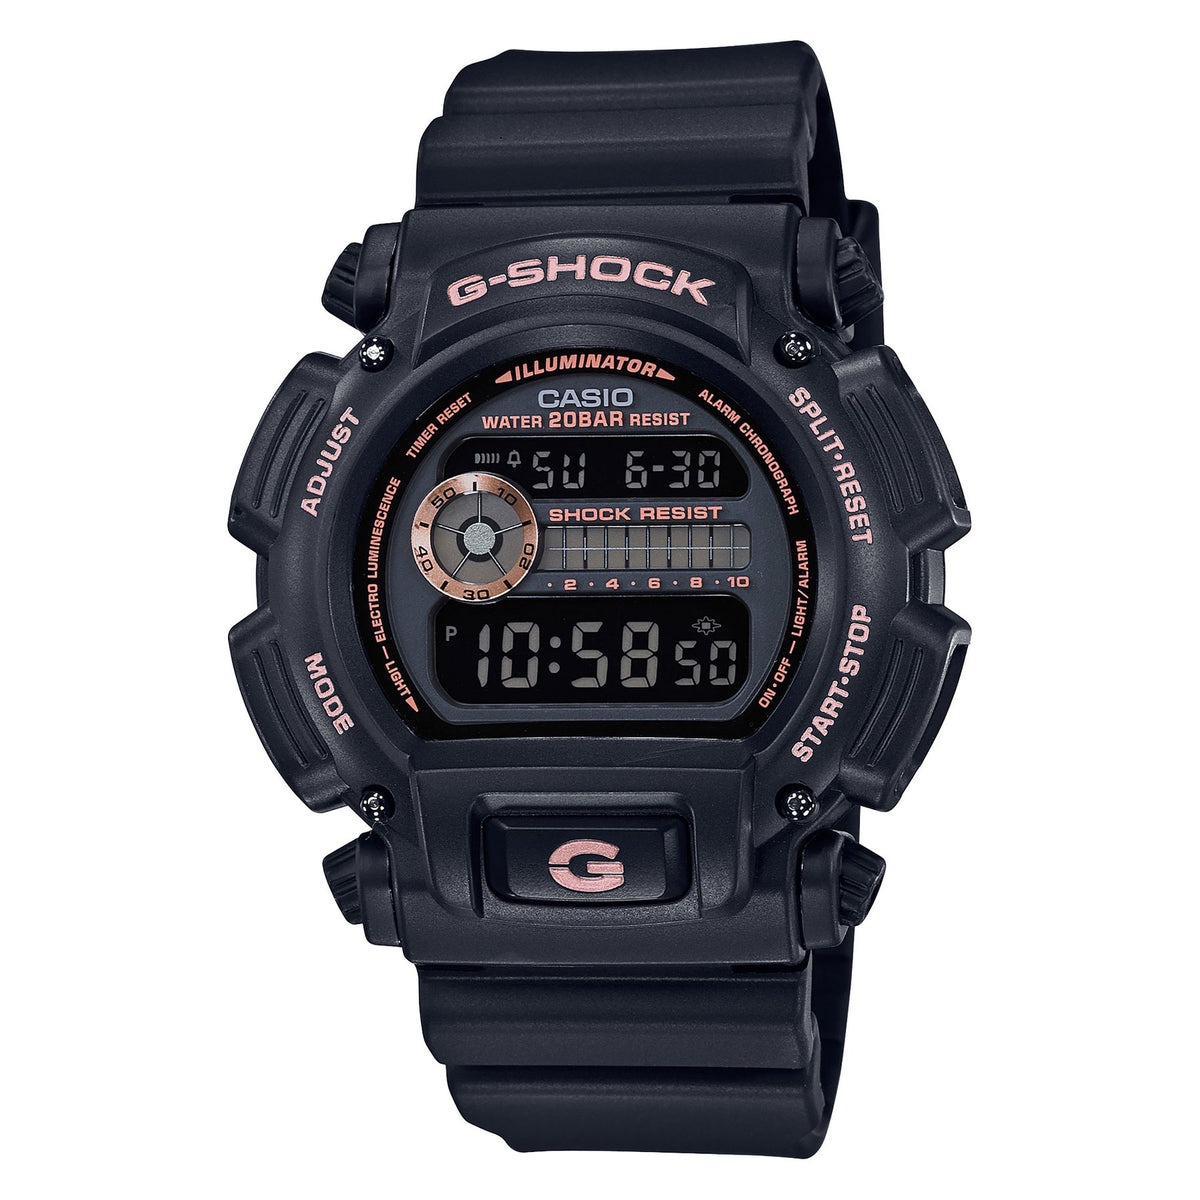 Reloj Casio G-SHOCK DW 9052GBX 1A4DR